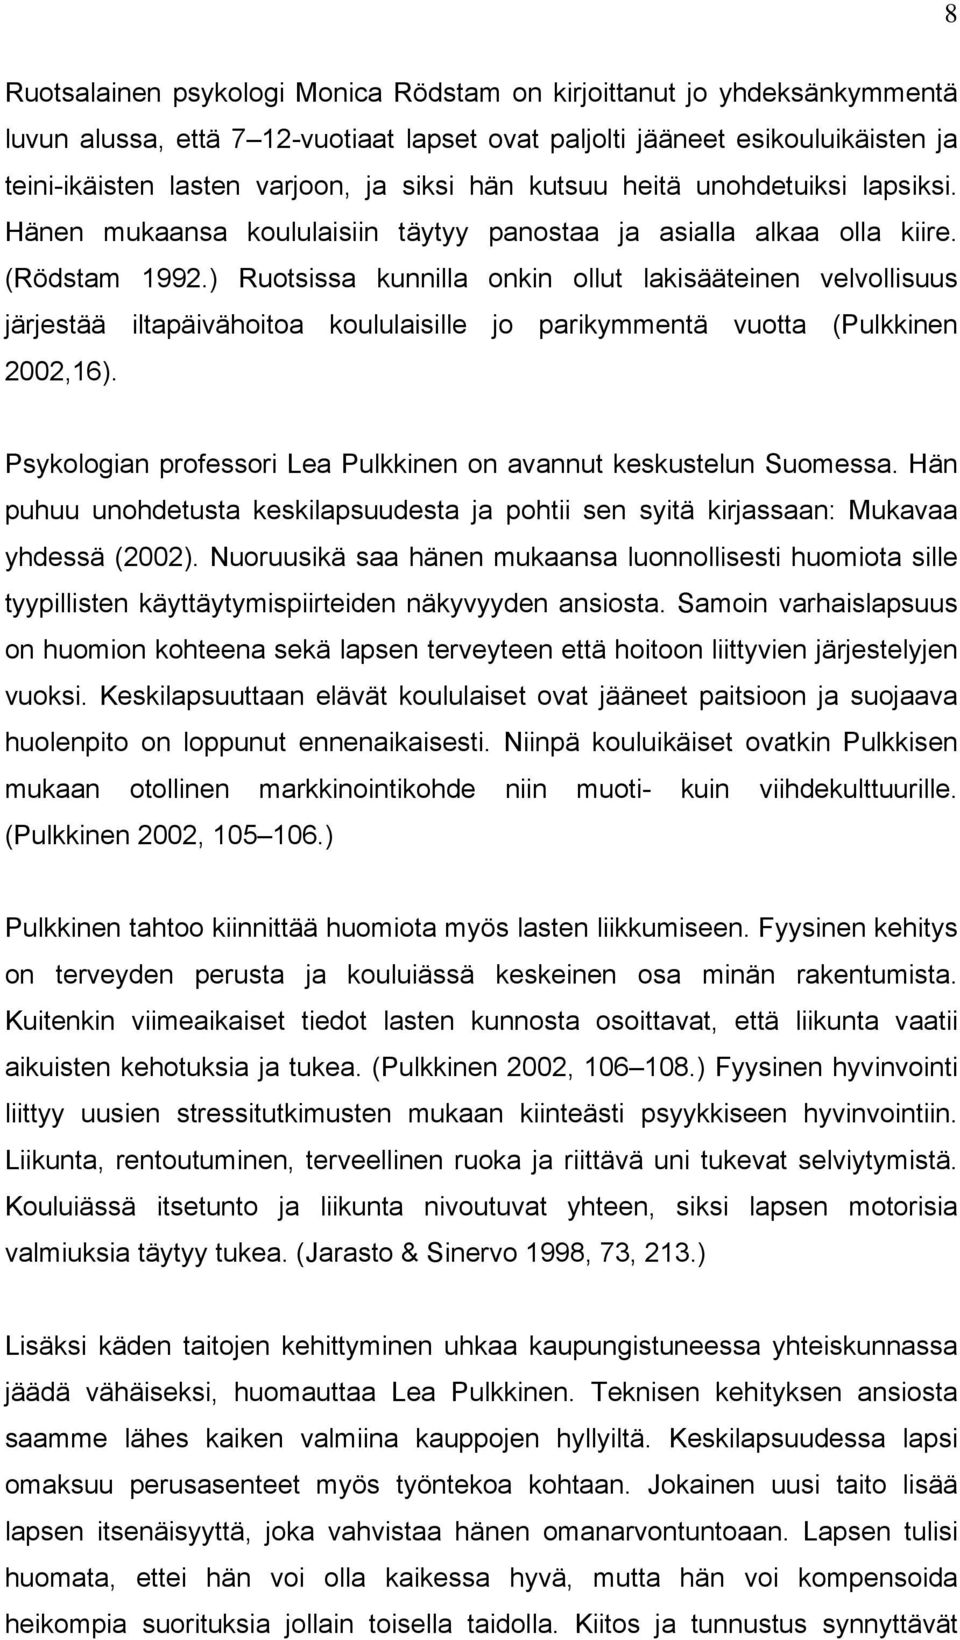 ) Ruotsissa kunnilla onkin ollut lakisääteinen velvollisuus järjestää iltapäivähoitoa koululaisille jo parikymmentä vuotta (Pulkkinen 2002,16).